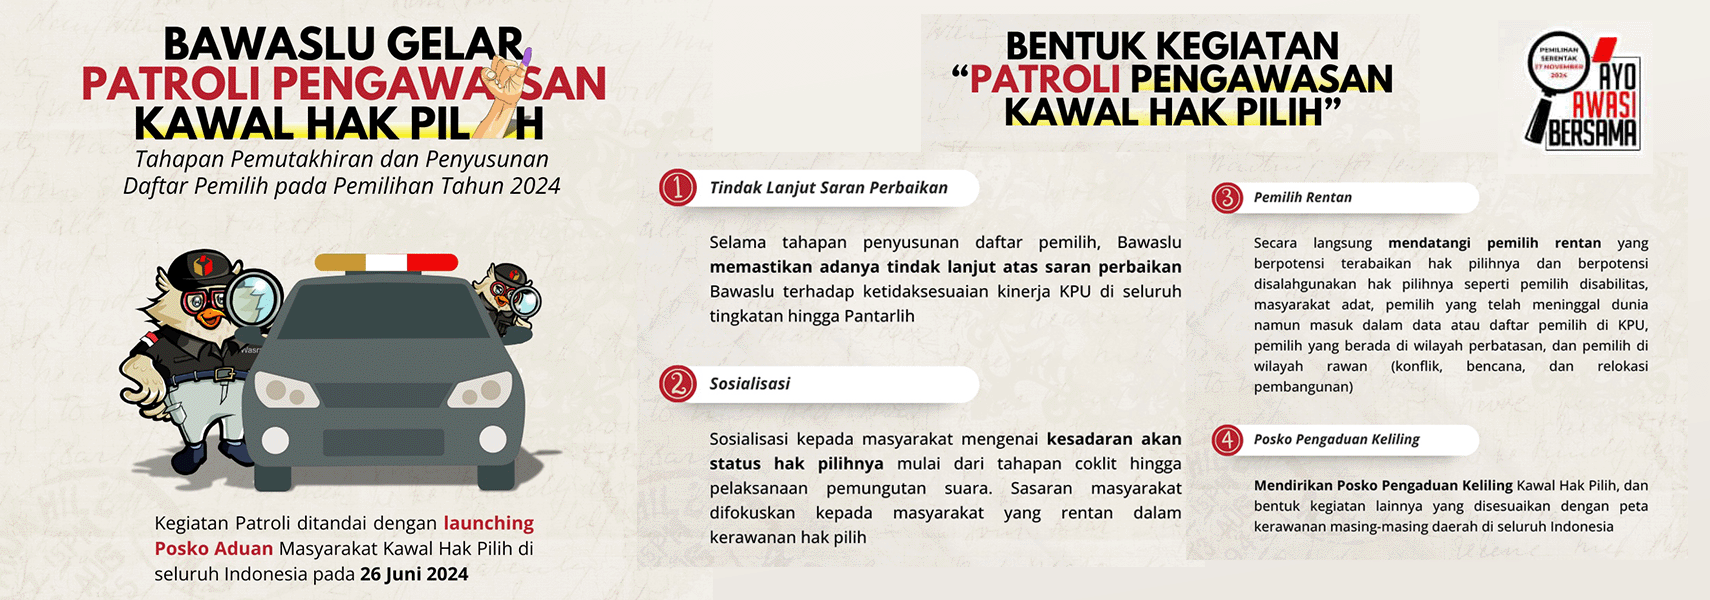 Setelah Bawaslu meluncurkan Posko Aduan Masyarakat Kawal Hak Pilih secara serentak diseluruh Indonesia pada 26 Juni 2024 lalu, kini Bawaslu gelar "Patroli Pengawasan Kawal Hak Pilih" sebagai tindak lanjutnya.